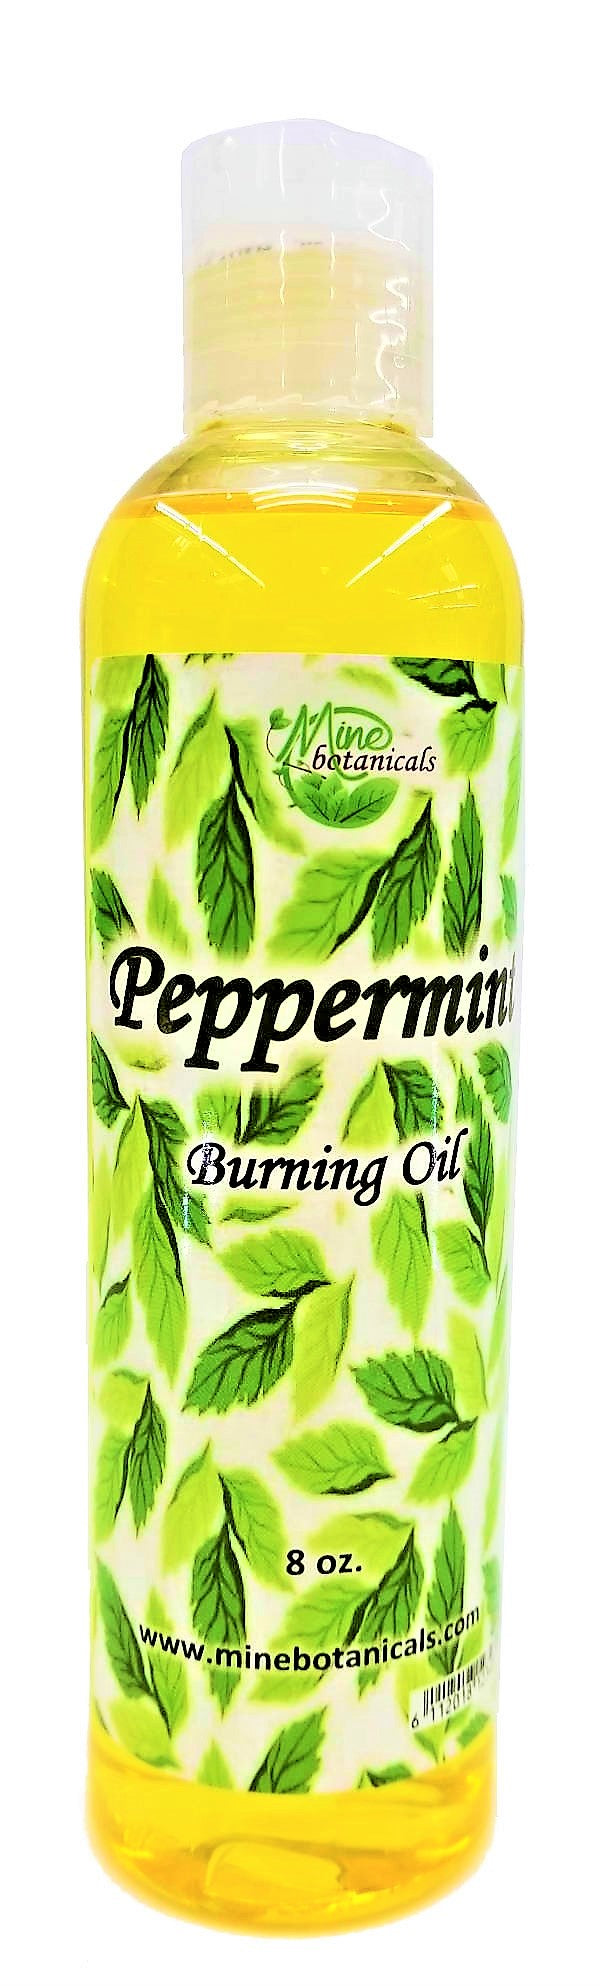 Peppermint Burning Oil